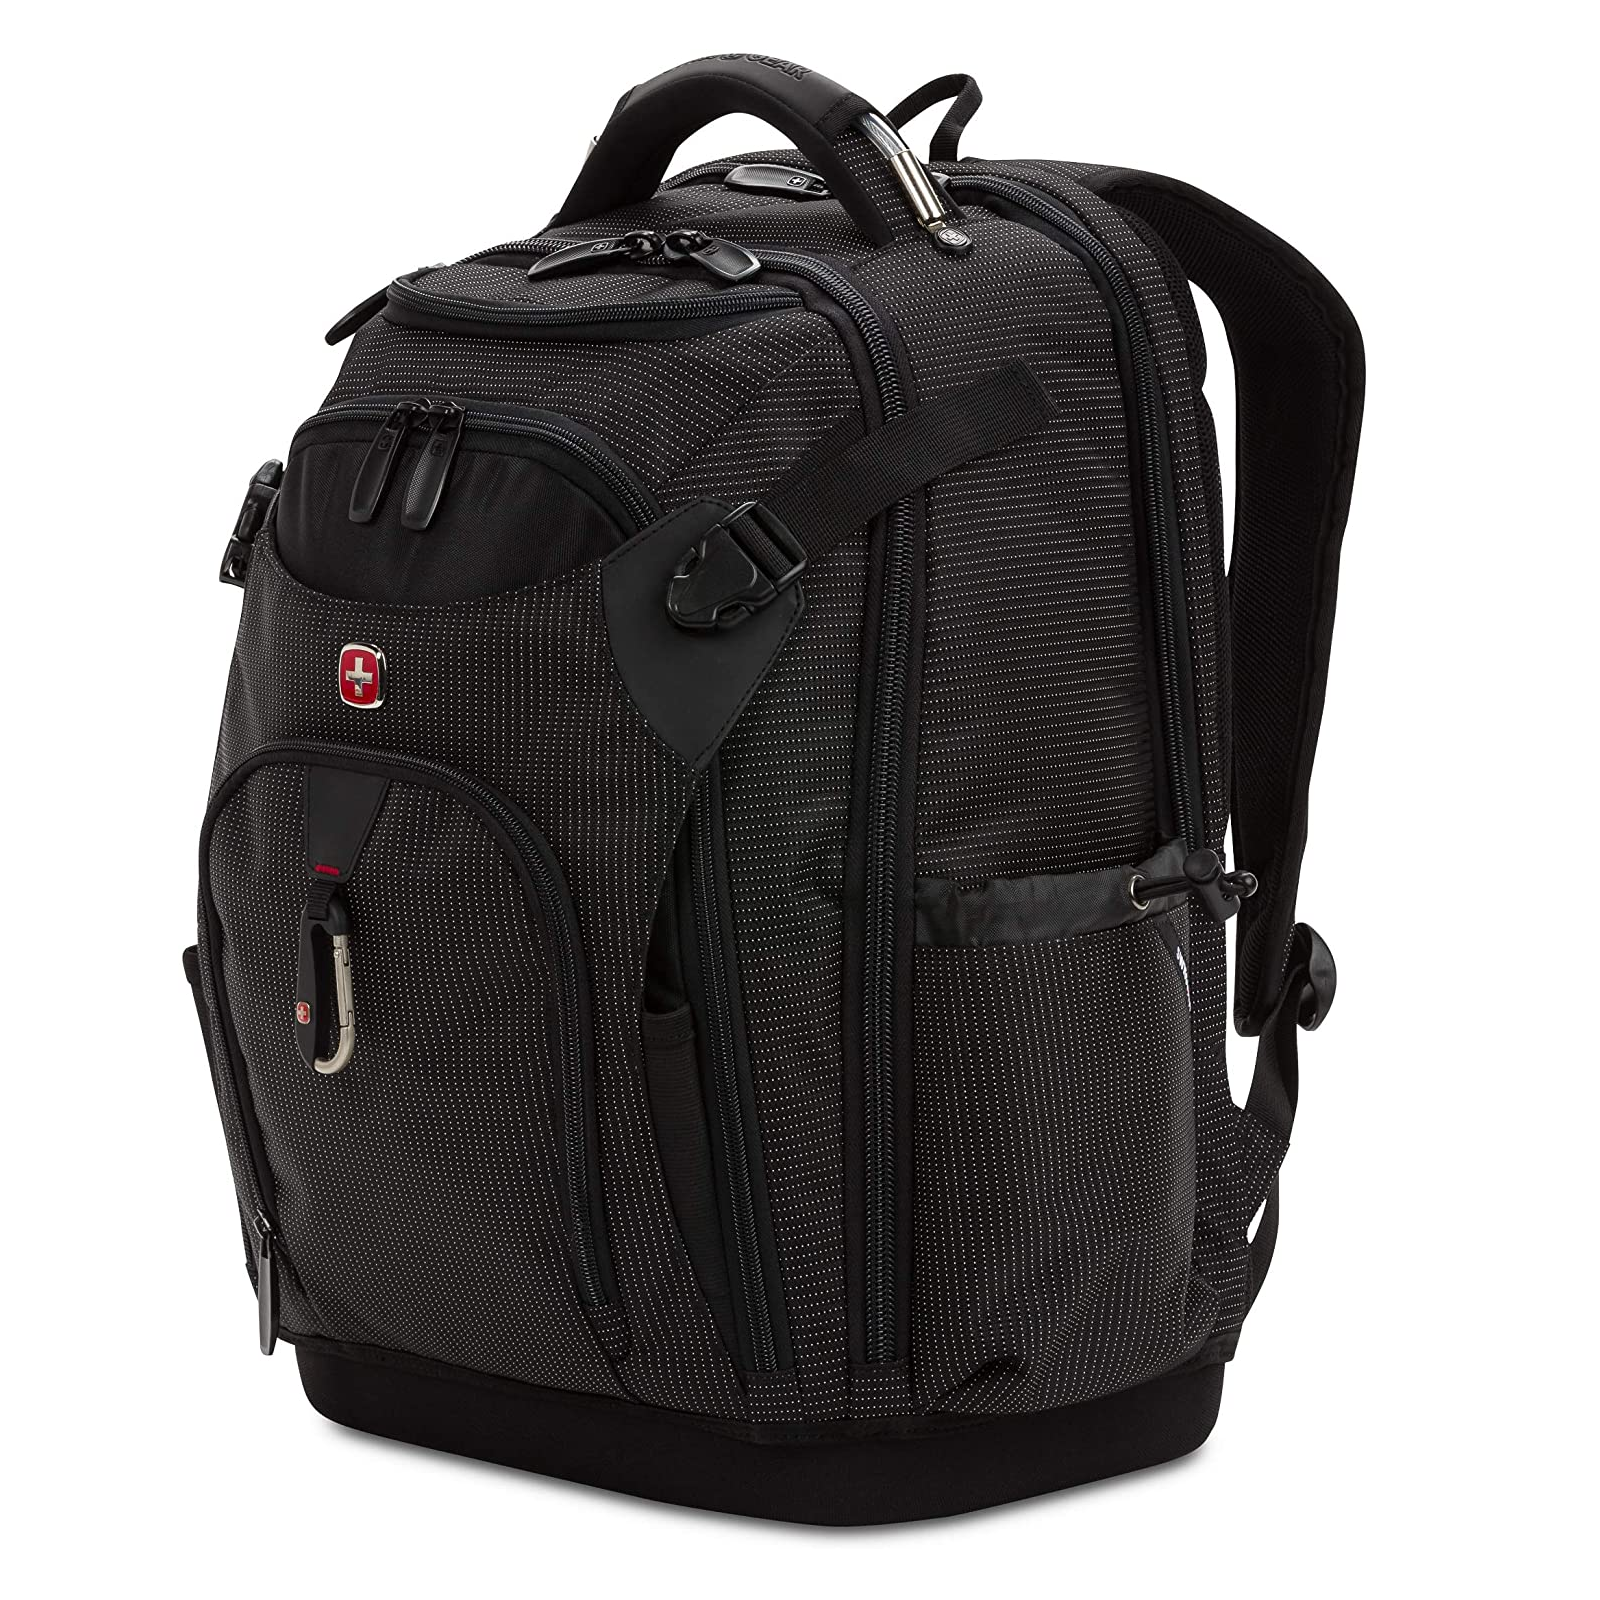 SWISSGEAR 3636 Work Pro Backpack Side View